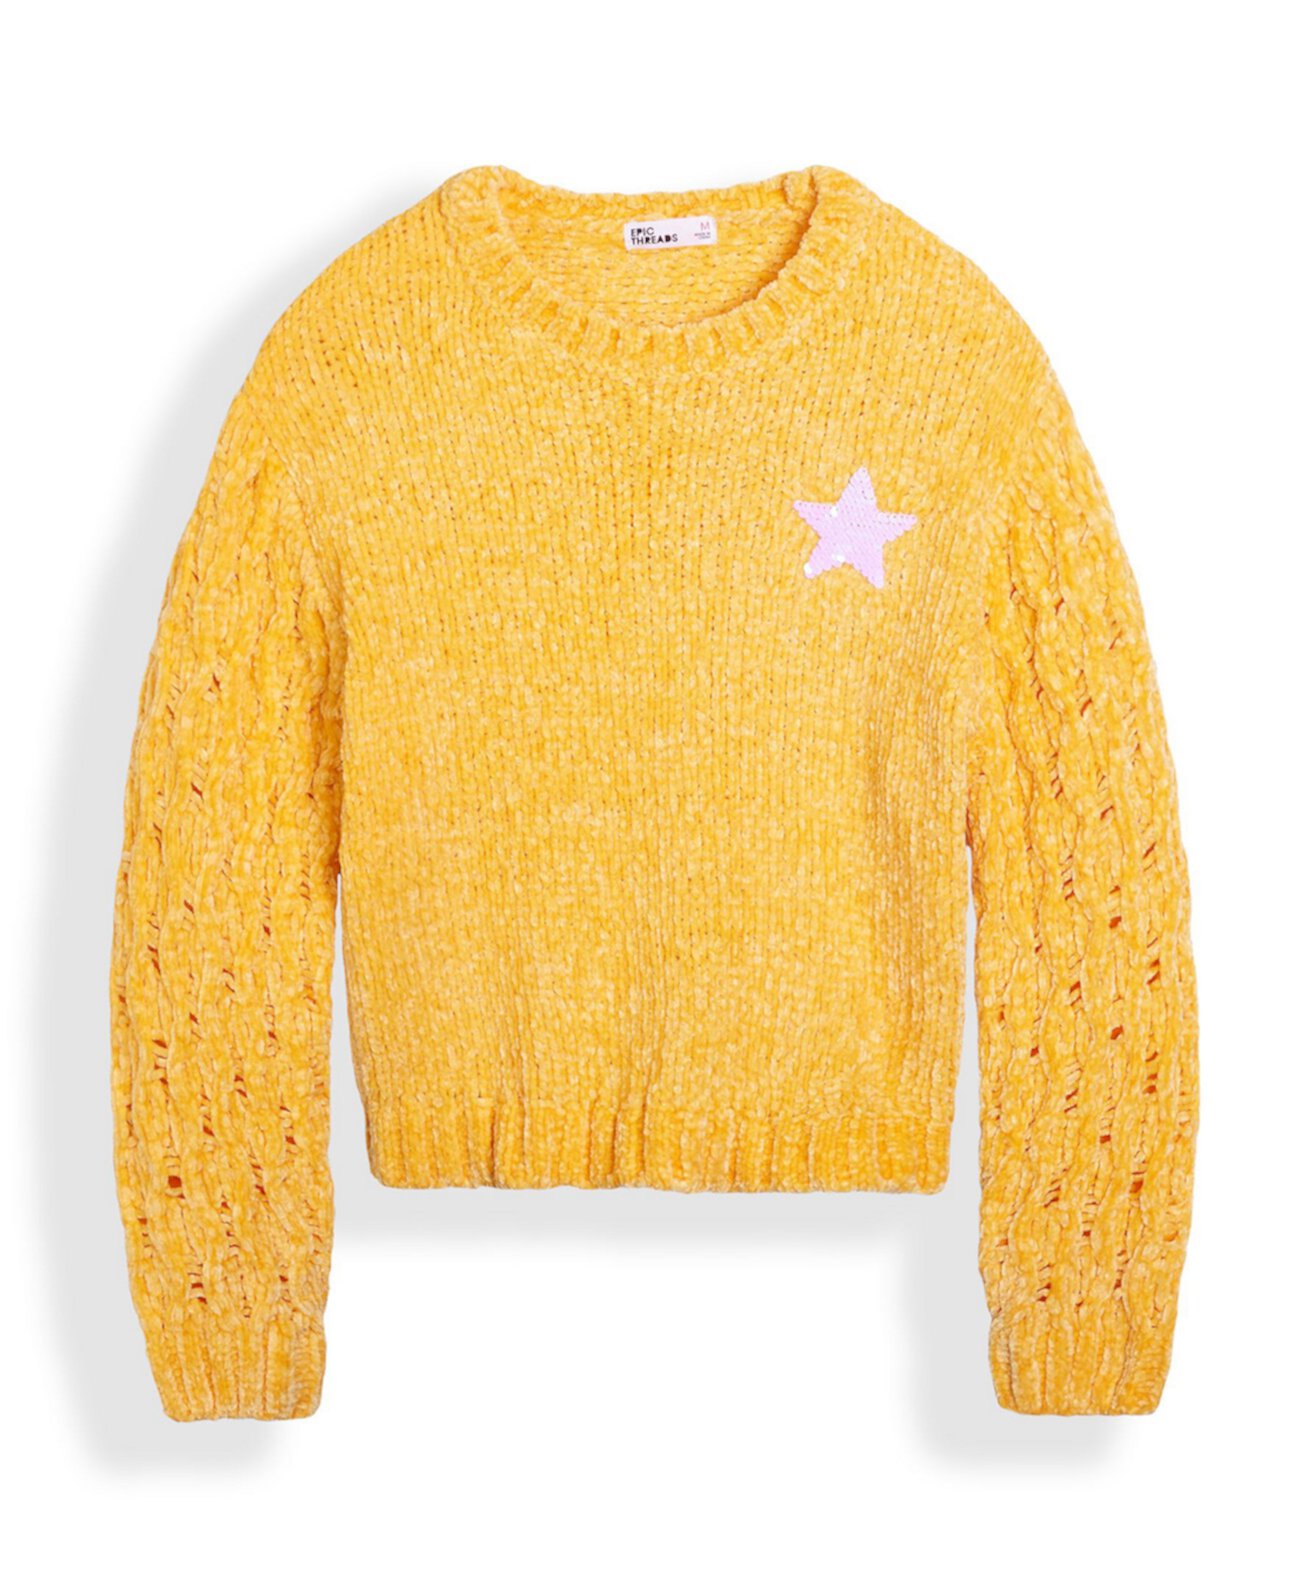 Флип-свитер со звездами и пайетками для больших девочек Epic Threads